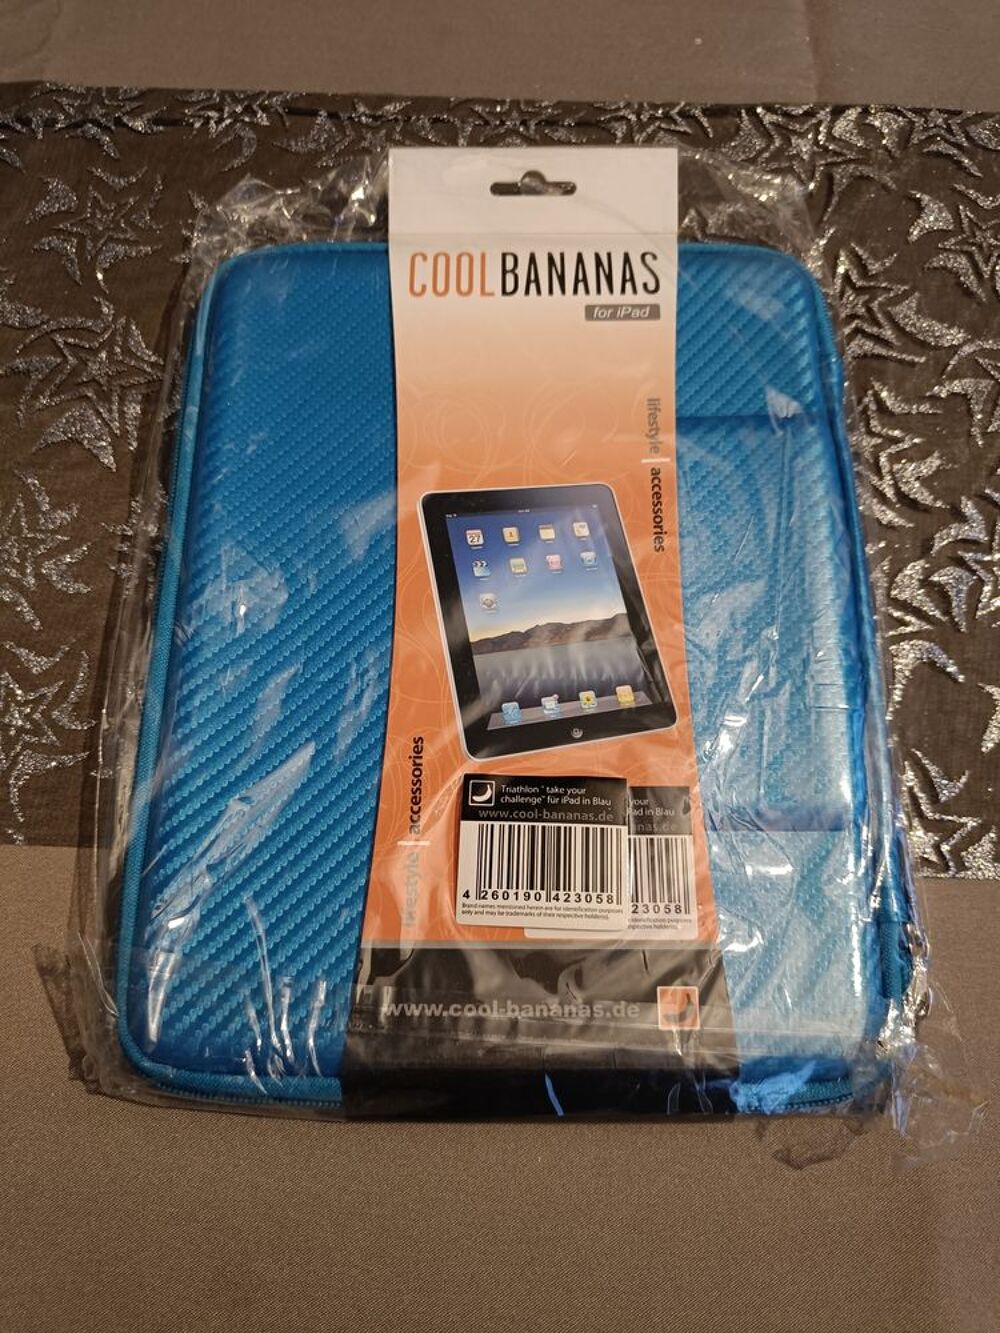 Housse rigide Cool Bananas pour Ipad - Bleu Matriel informatique